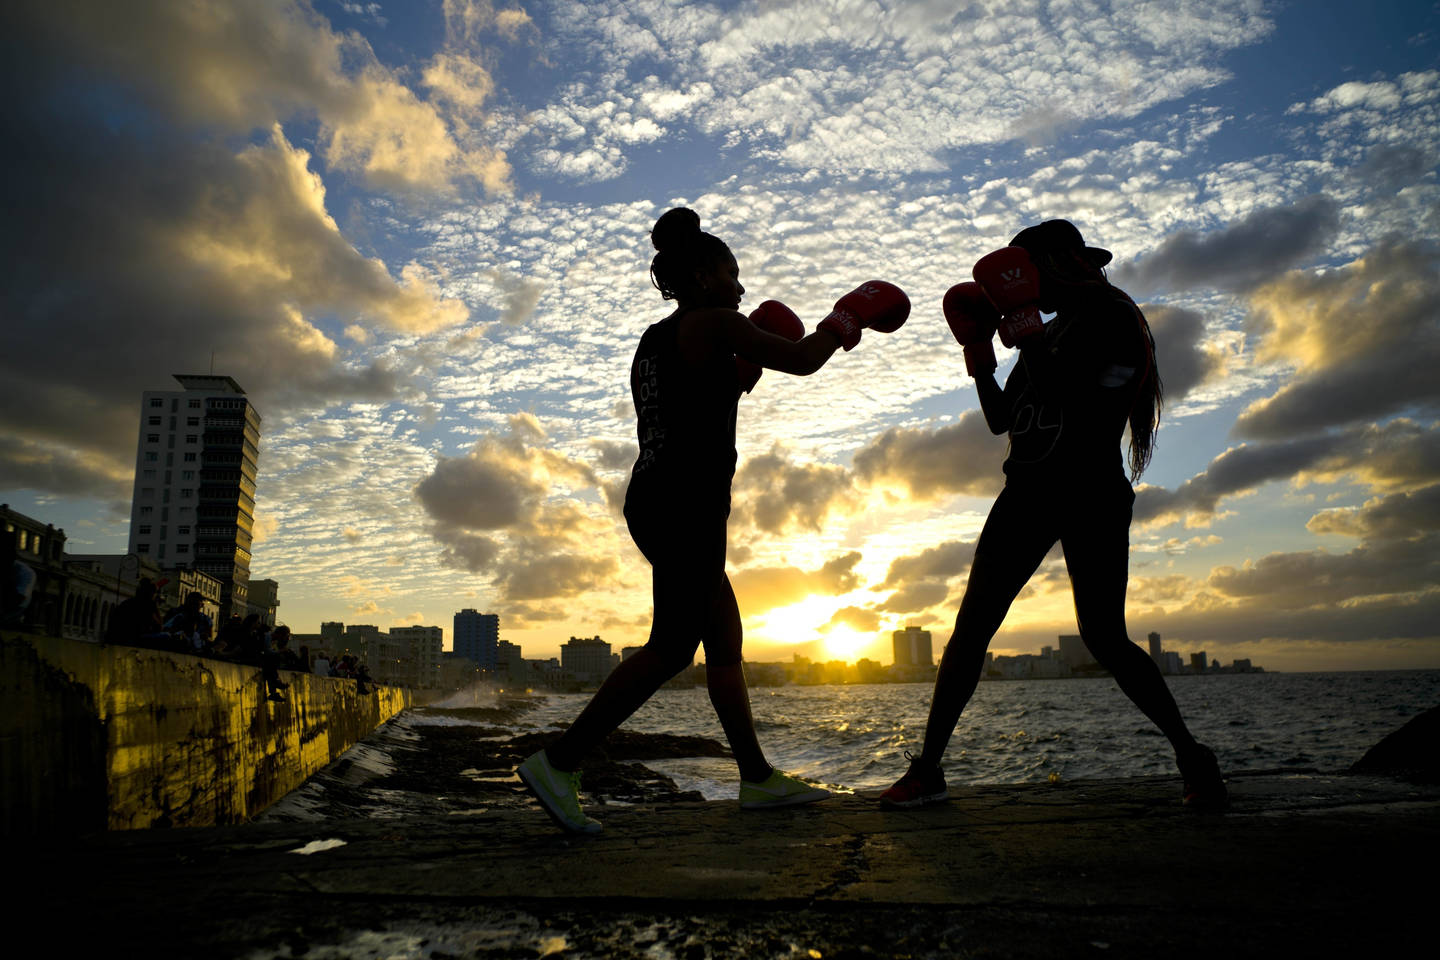  Dvi Kubos boksininkės treniruojasi krantinėje. Sausio 30-oji, Havana (Kuba).<br> AP nuotr.